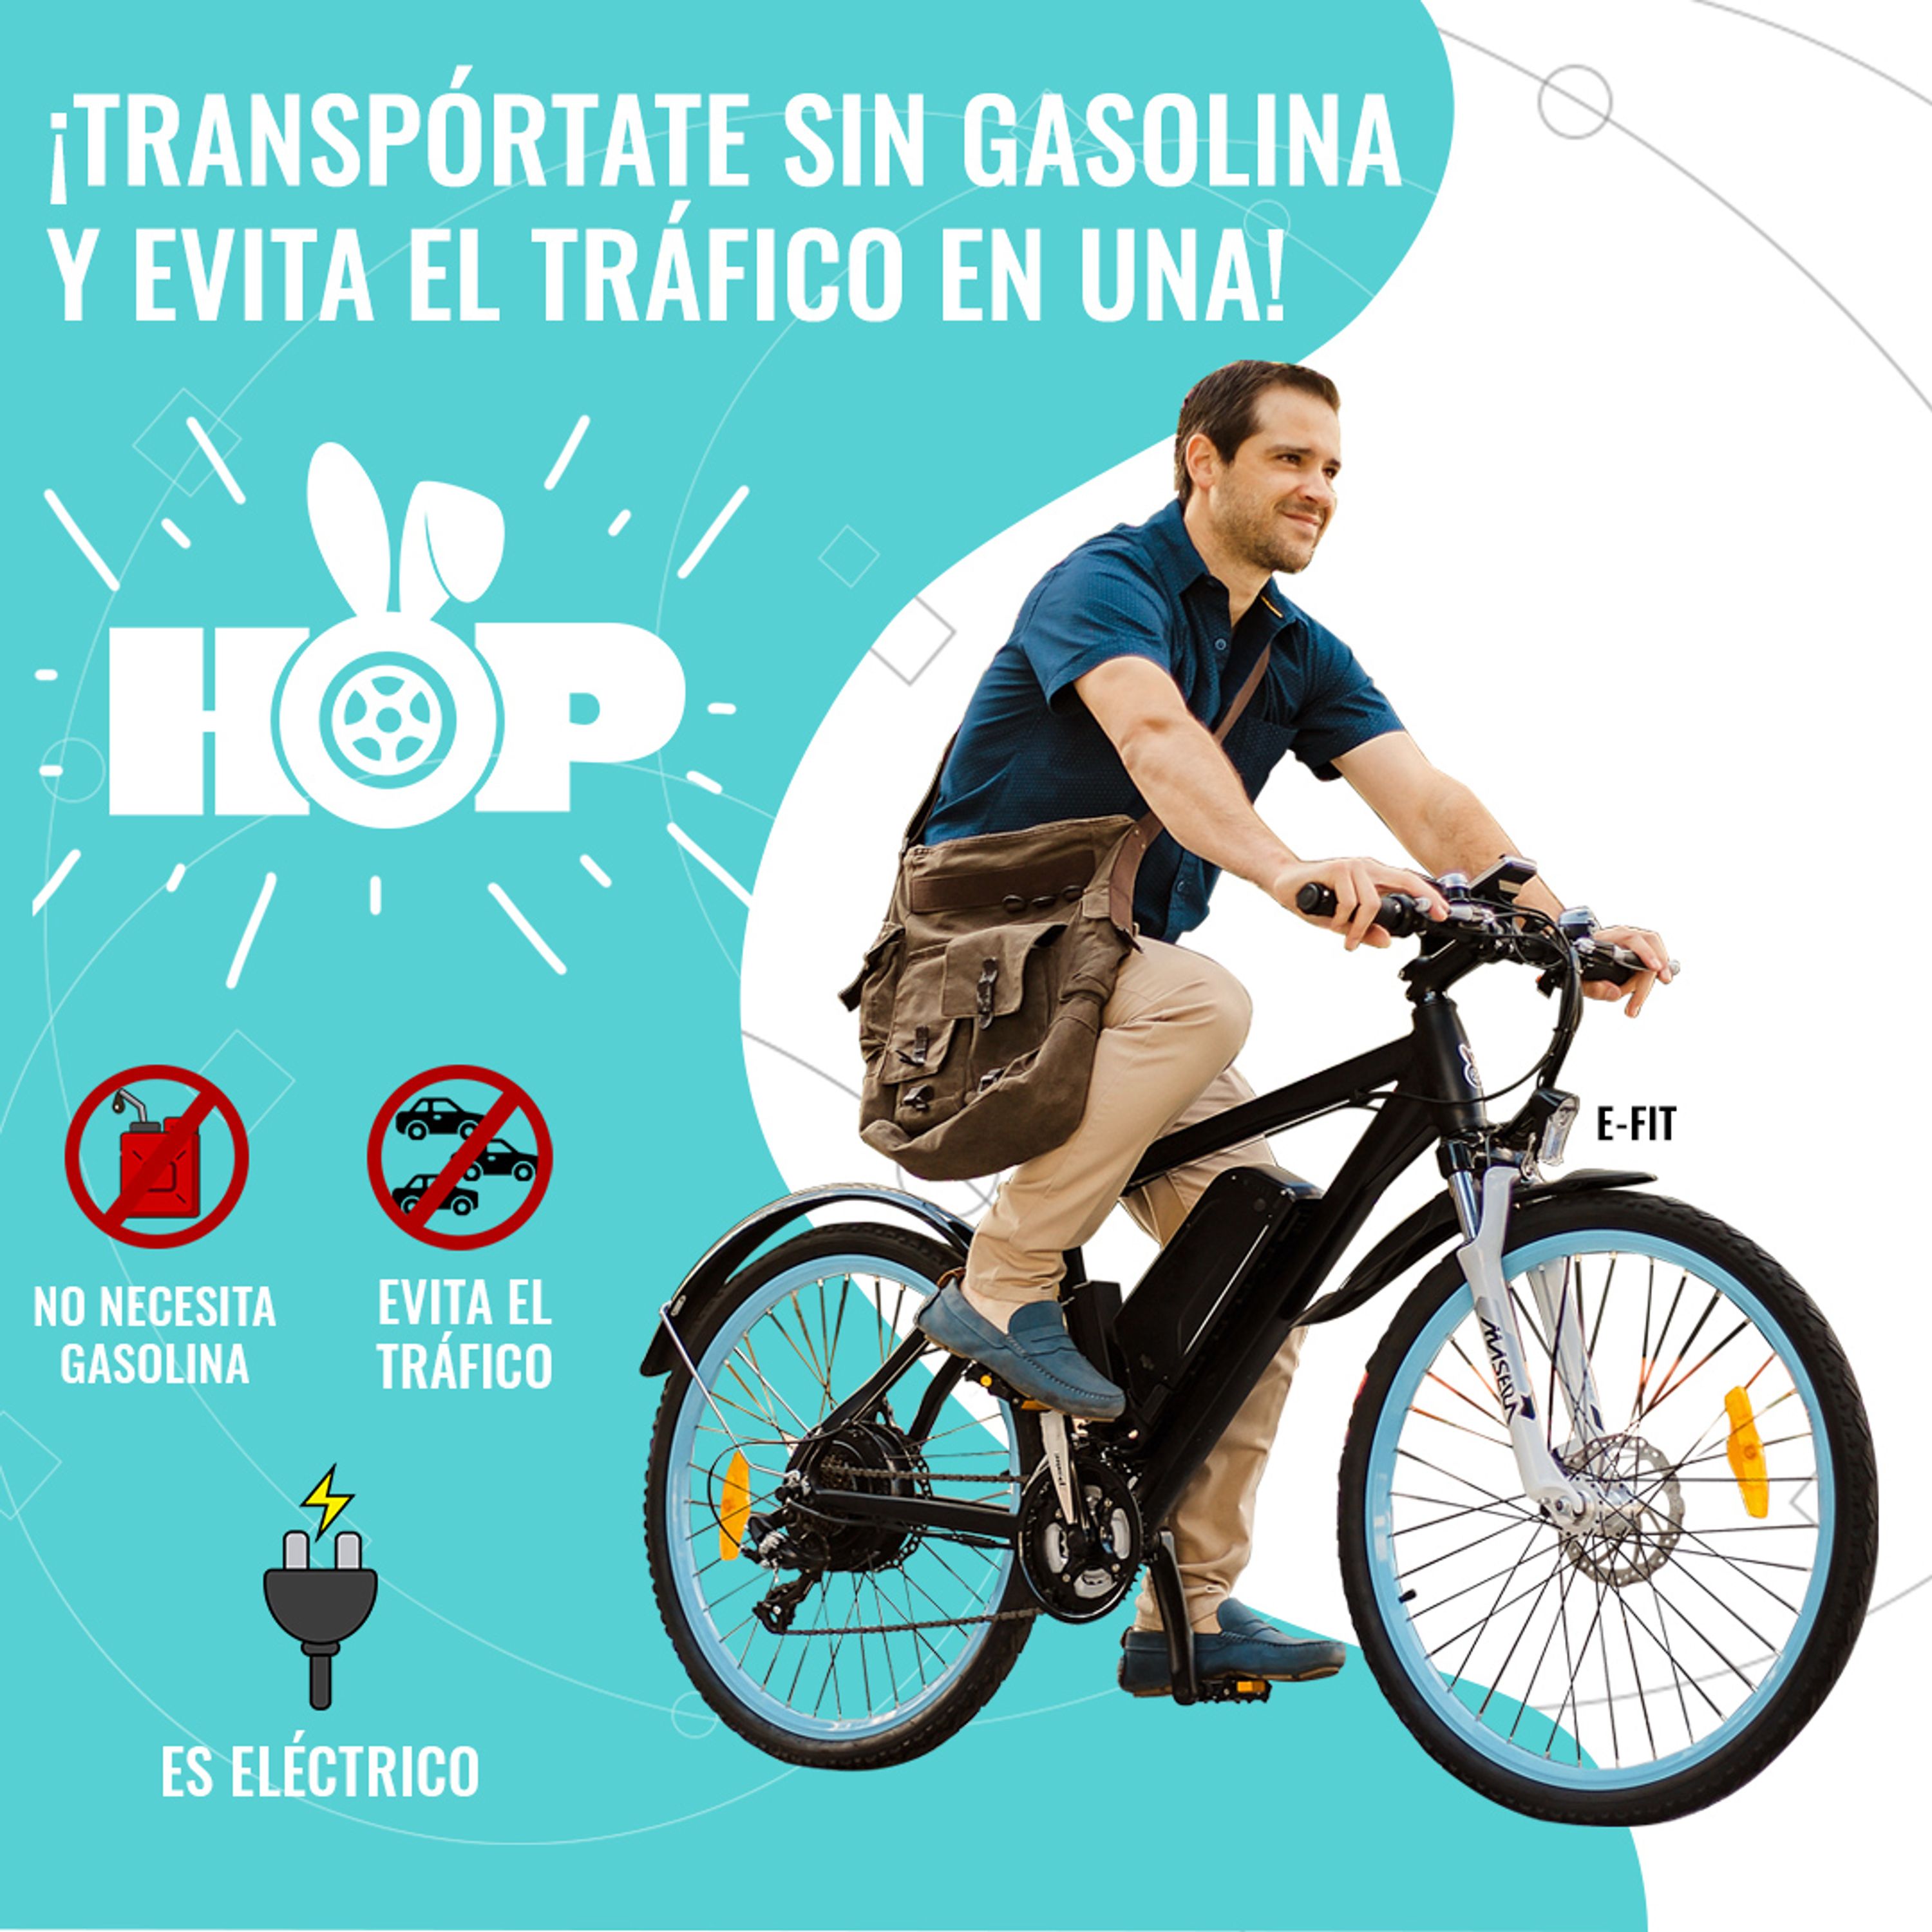 Transportate sin gasolina y evita el trafico en una! Llevate tu e-bike desde 3 a 10 pagos sin recargo!